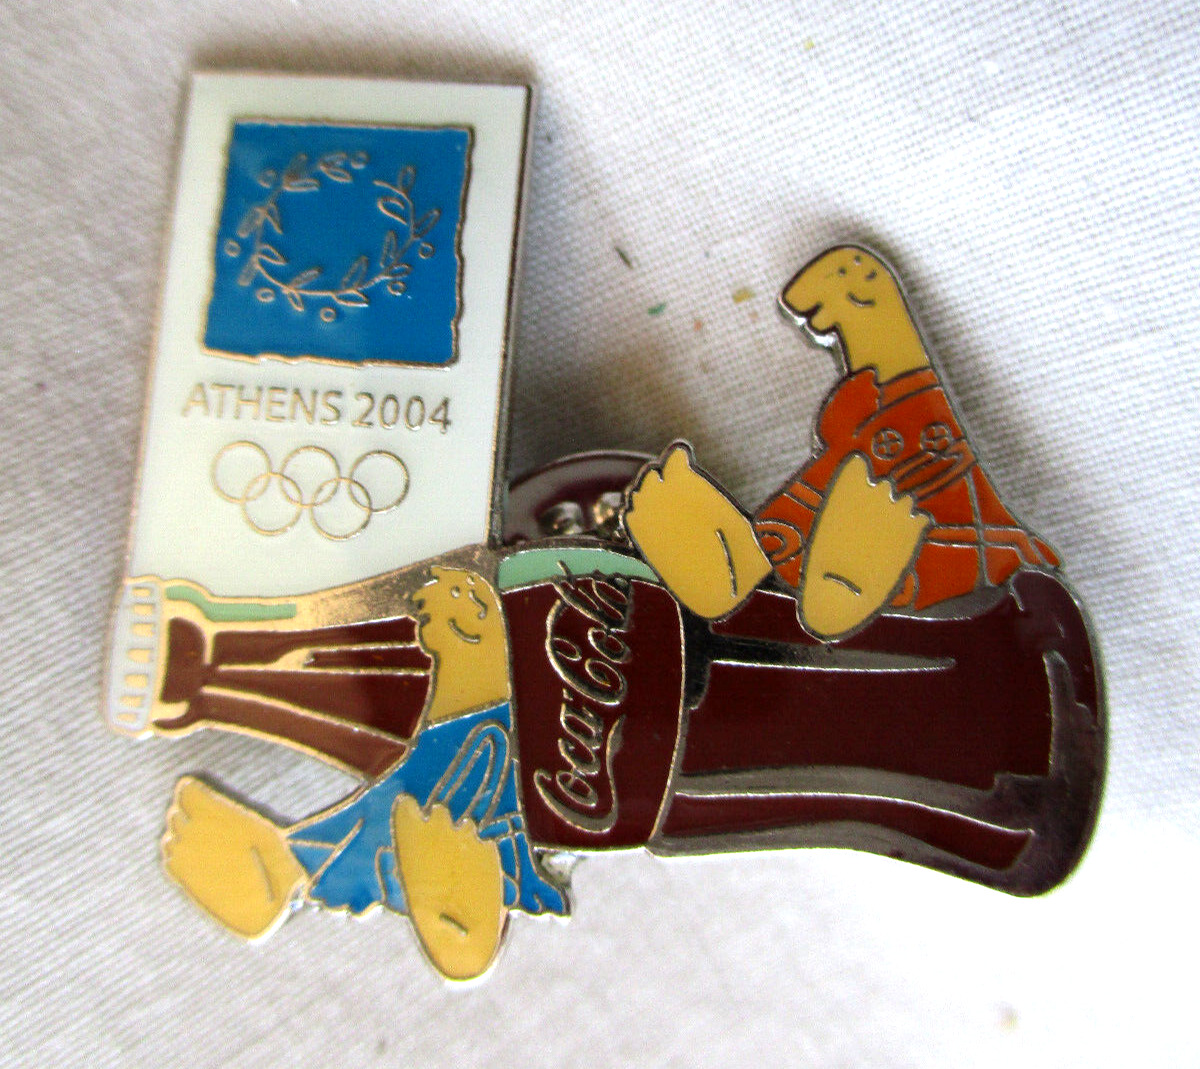 Athens Greece Olympic 2004 Coca Cola Mascot Lapel Pin Souvenir Coke Bottle